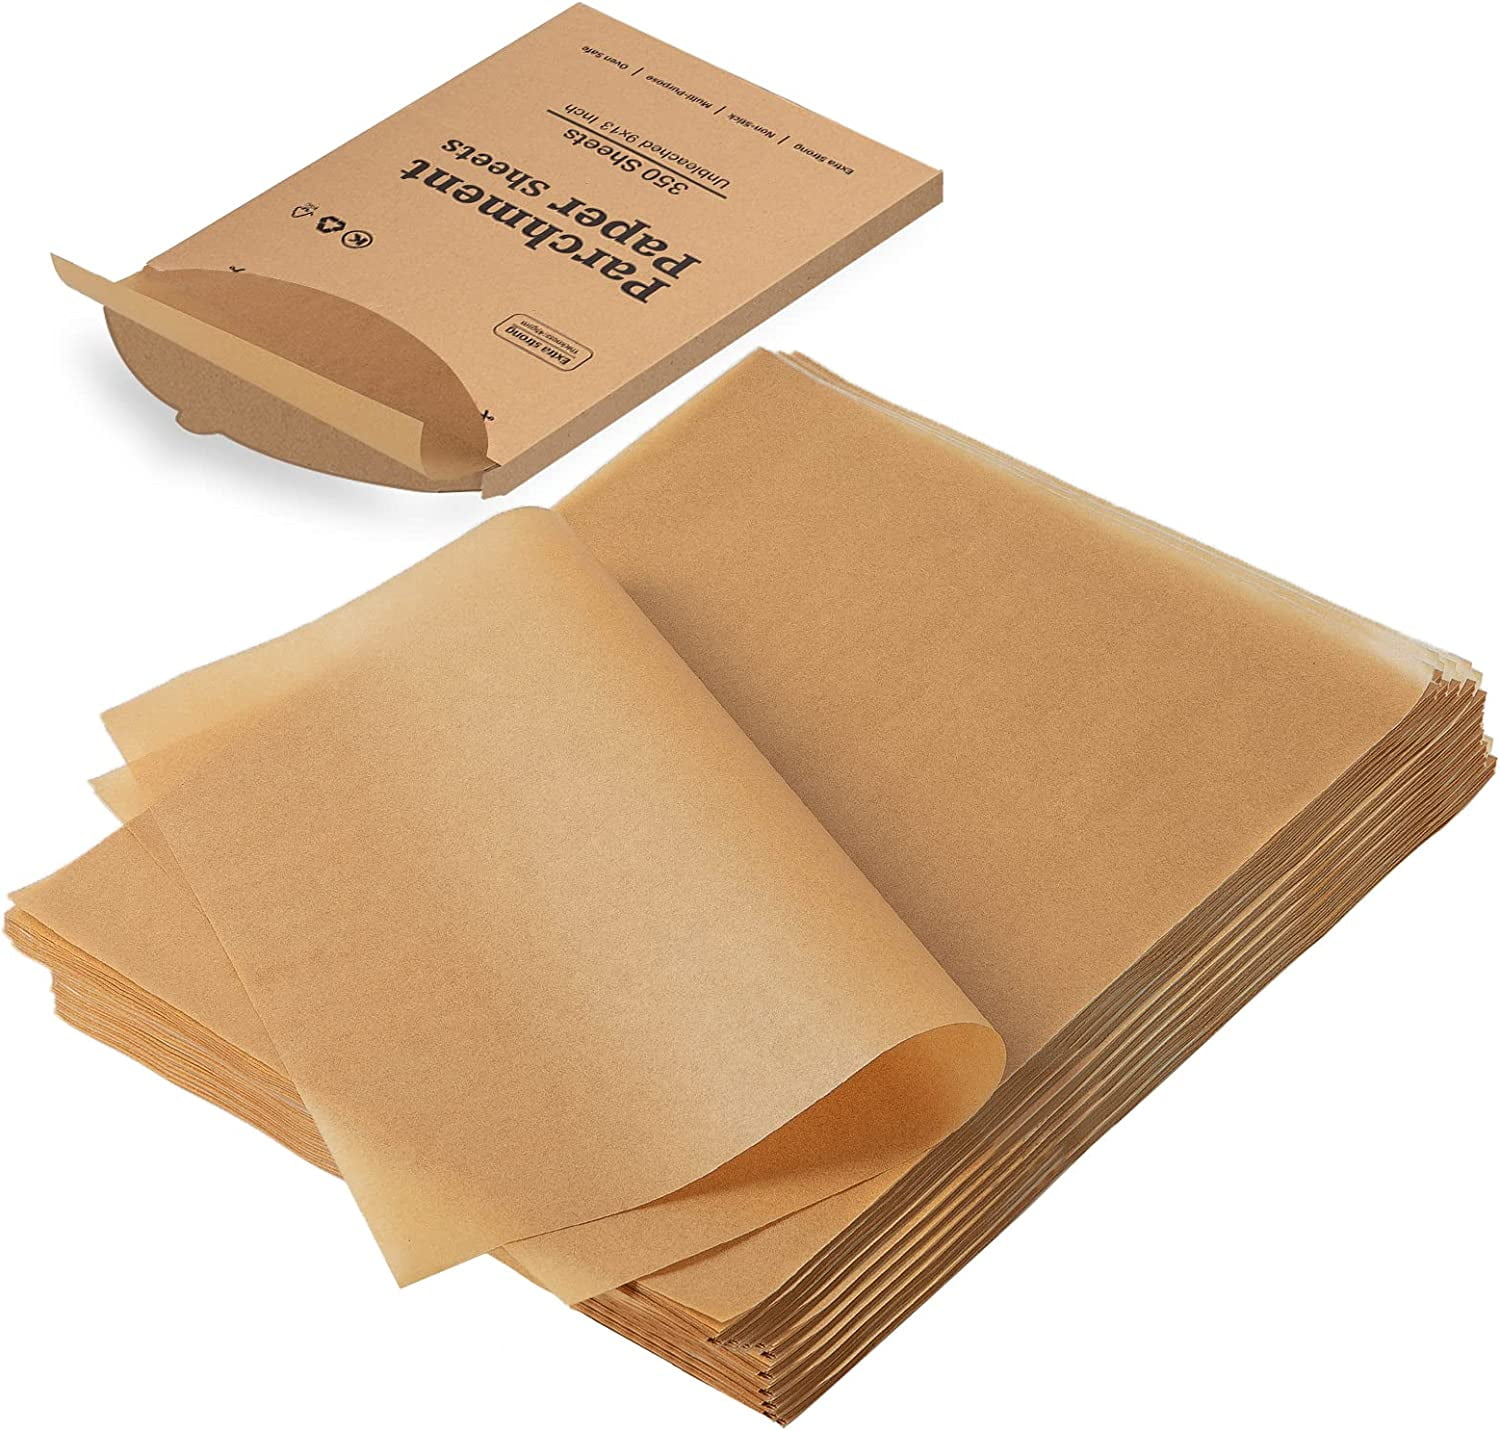 Parchment Paper 100PCS Parchment Paper Sheets For Baking Unbleached Paper  Baking Sheets Precut Non-Stick Parchment Sheets For - AliExpress